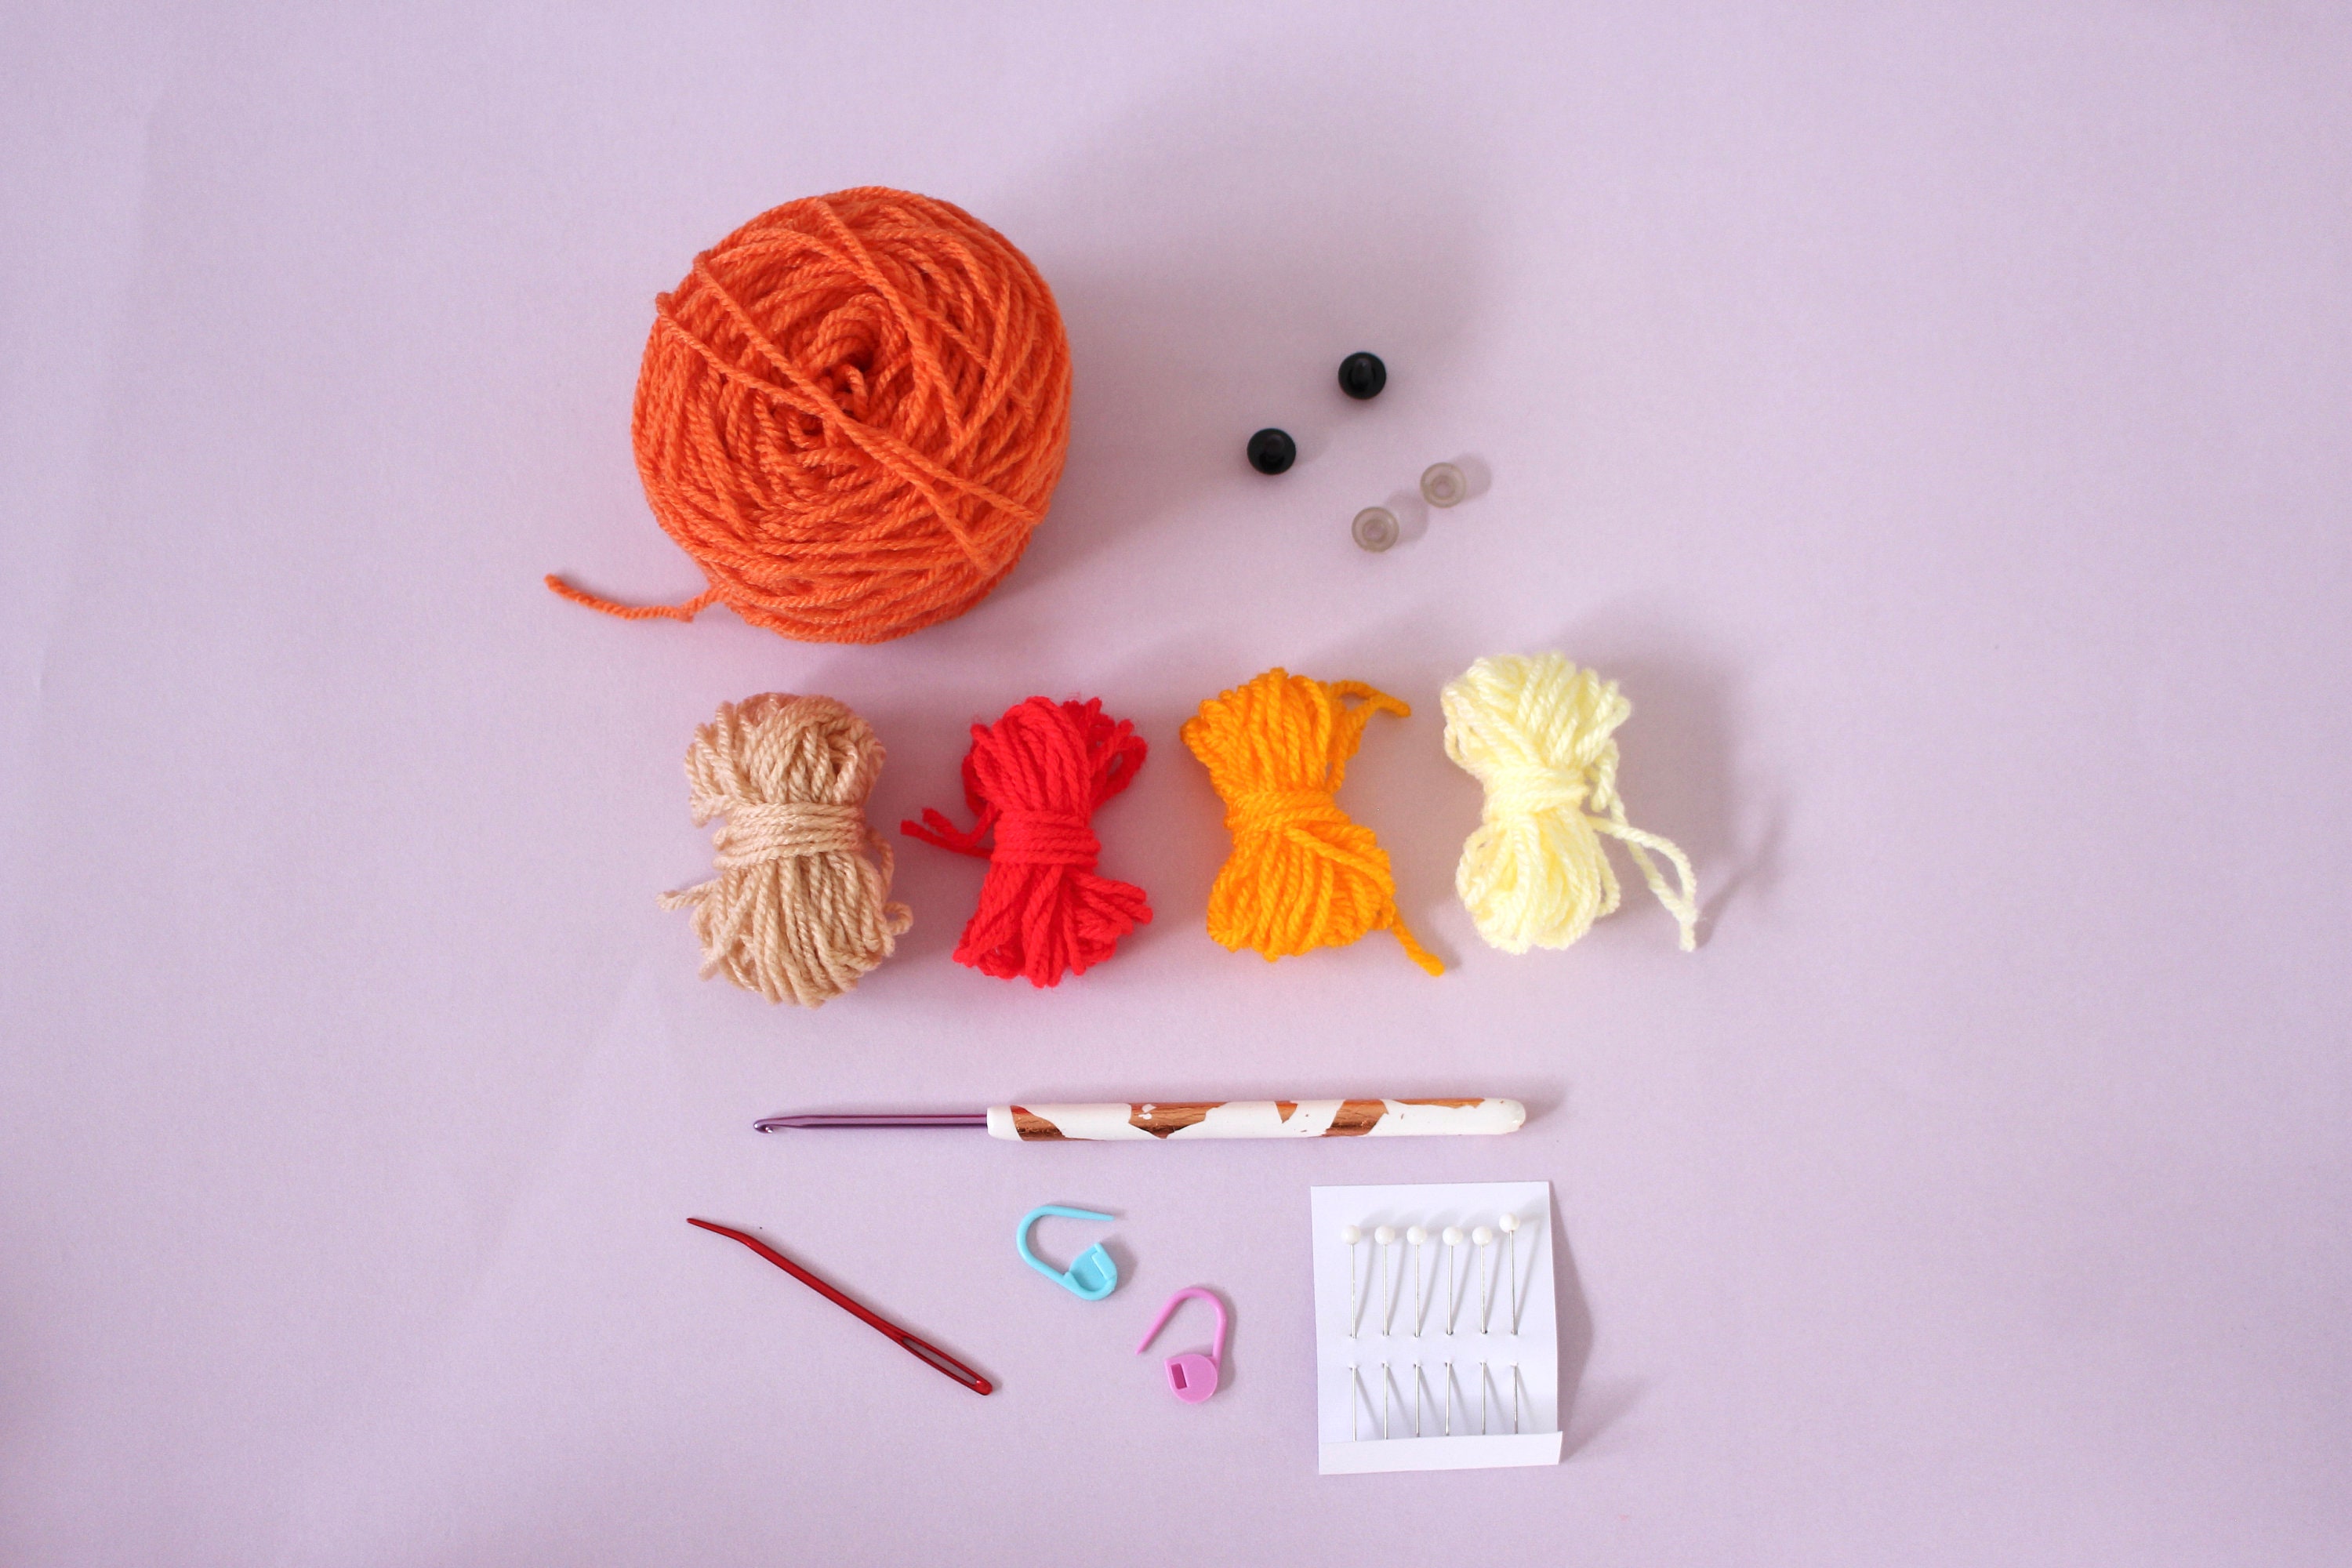 Charmander Crochet Kit for Beginners Pokemon Starter DIY -  New Zealand